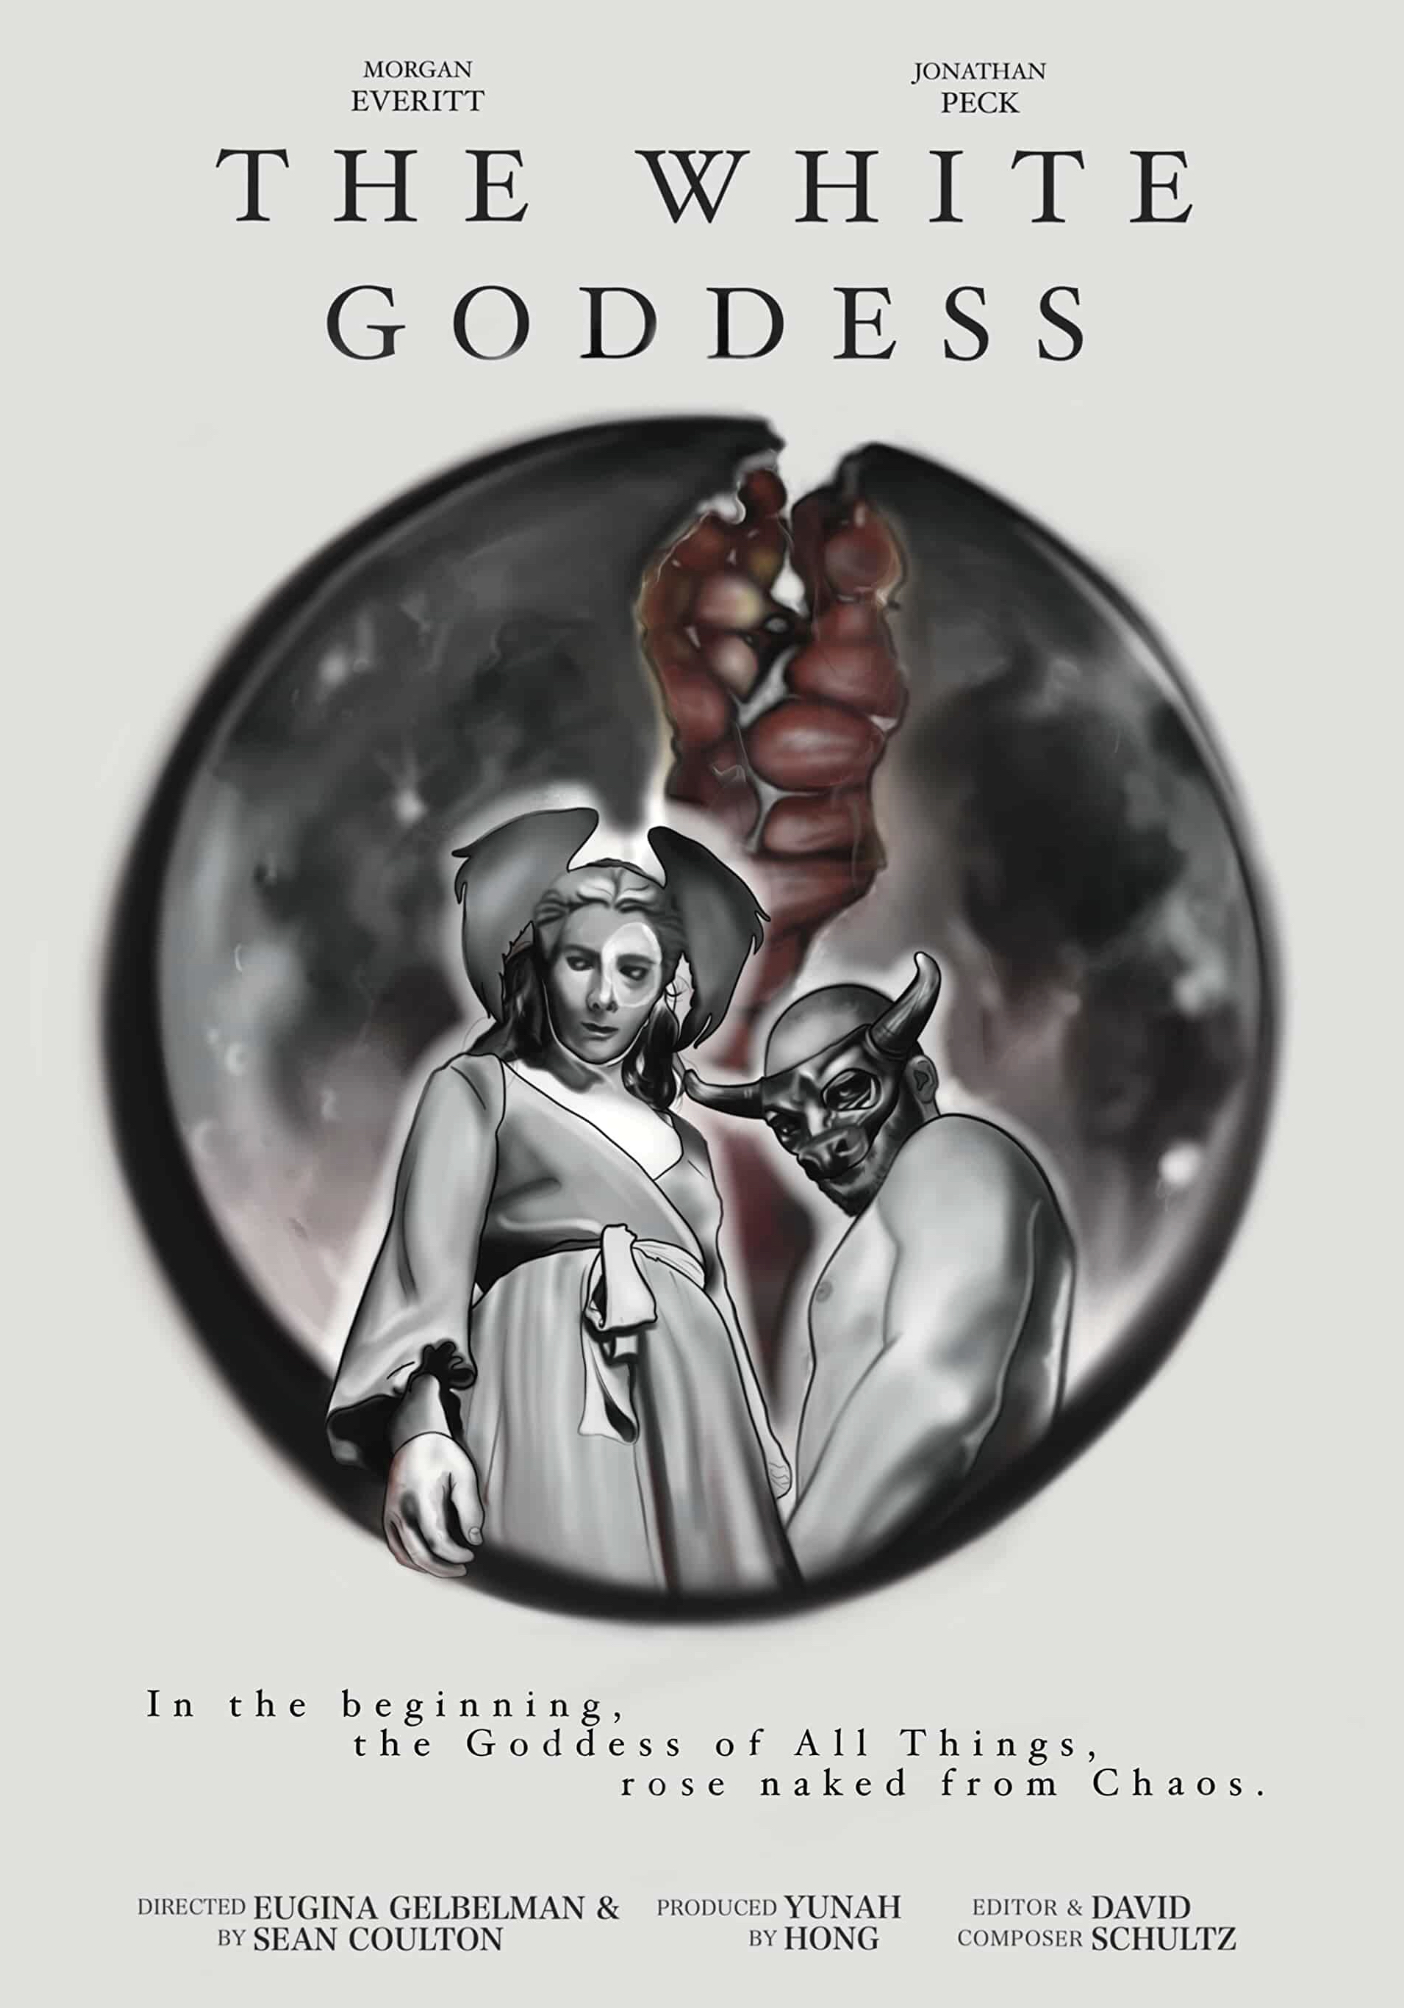 The White Goddess Image